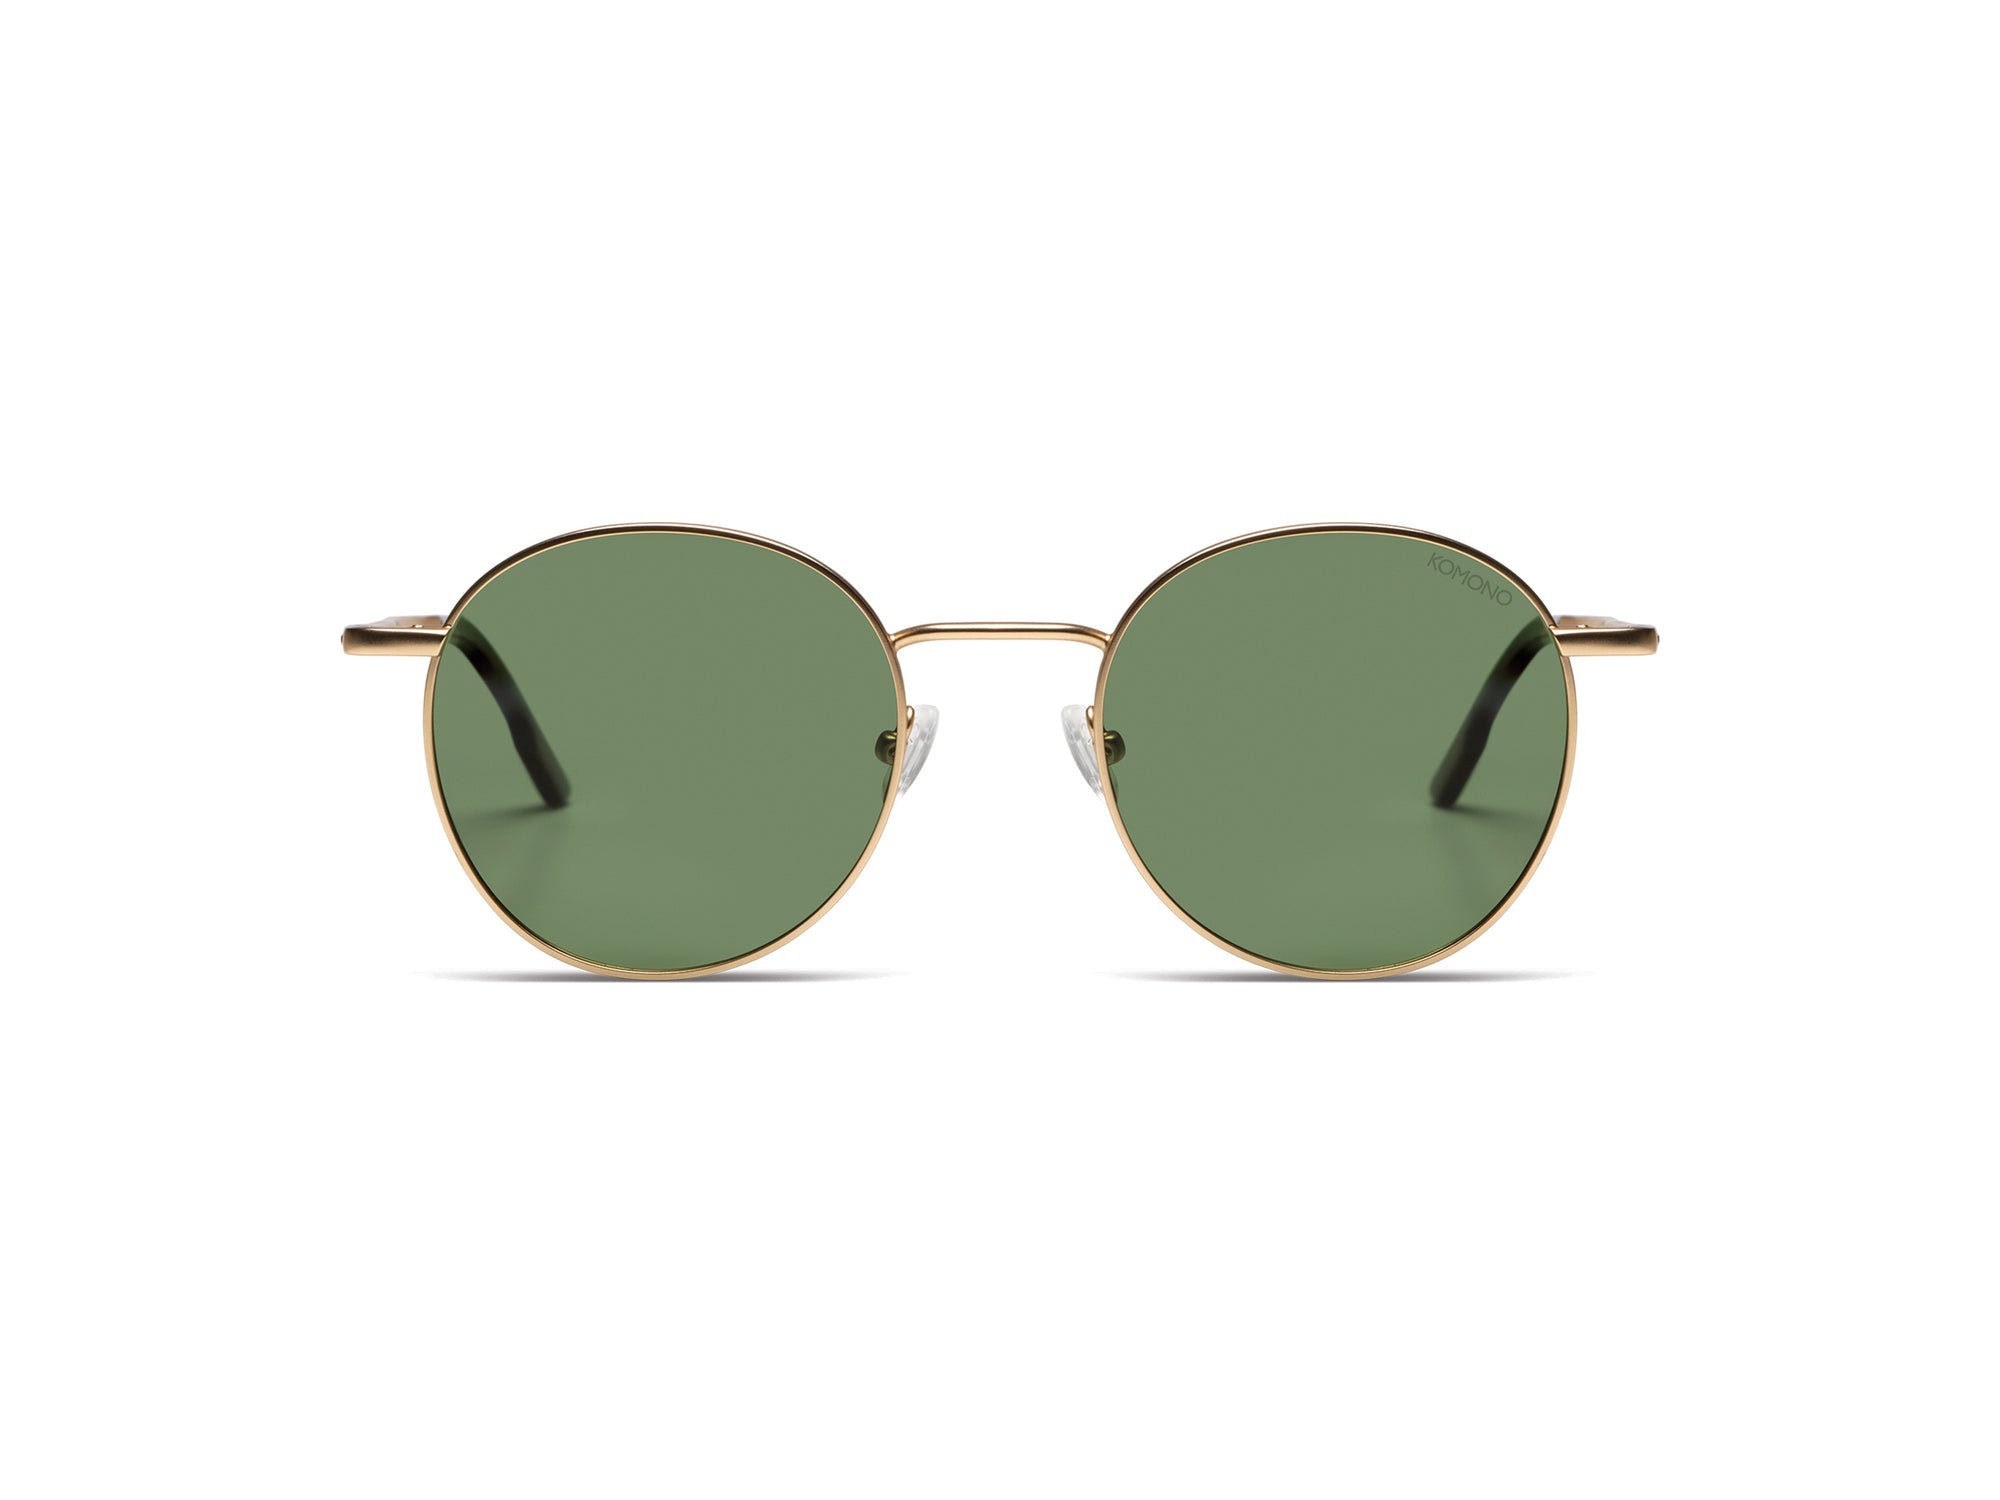 Komono Solid Green White Gold Pete Sunglasses